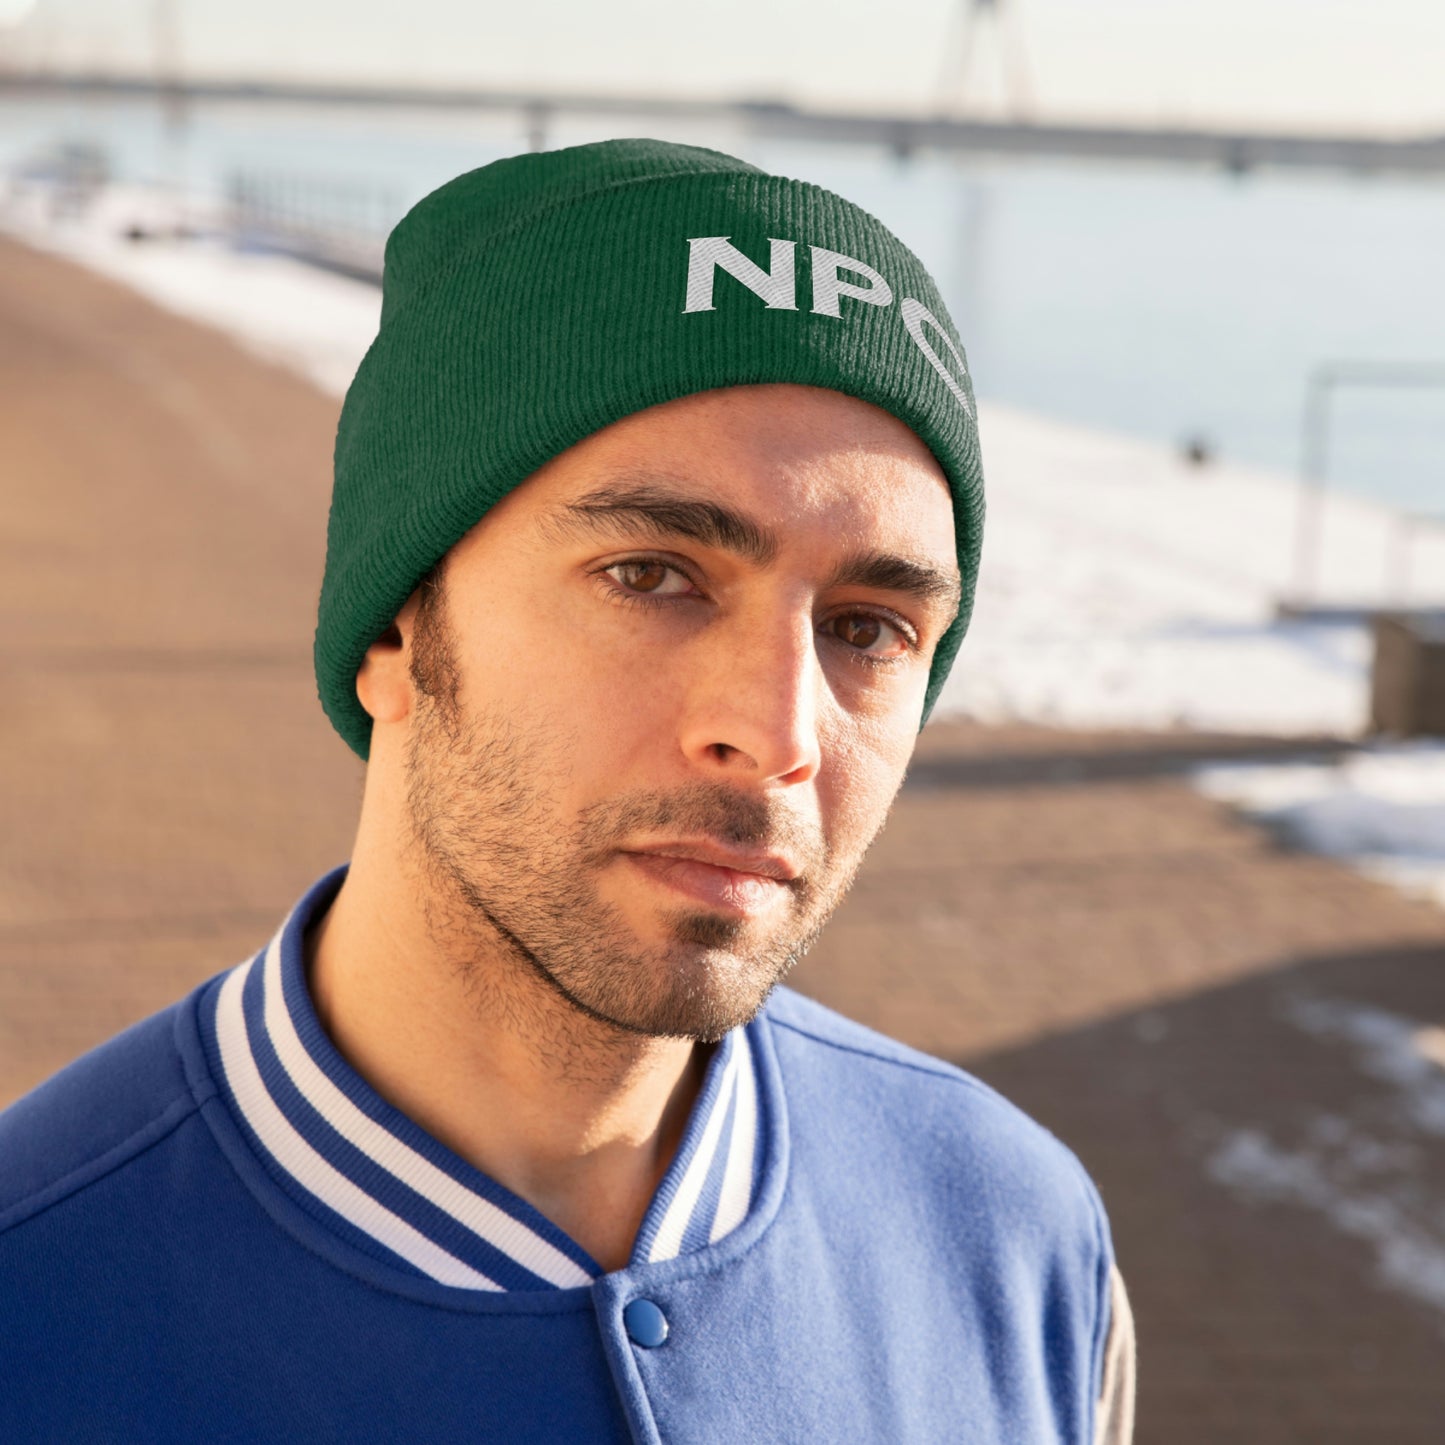 「NPC」ニット帽